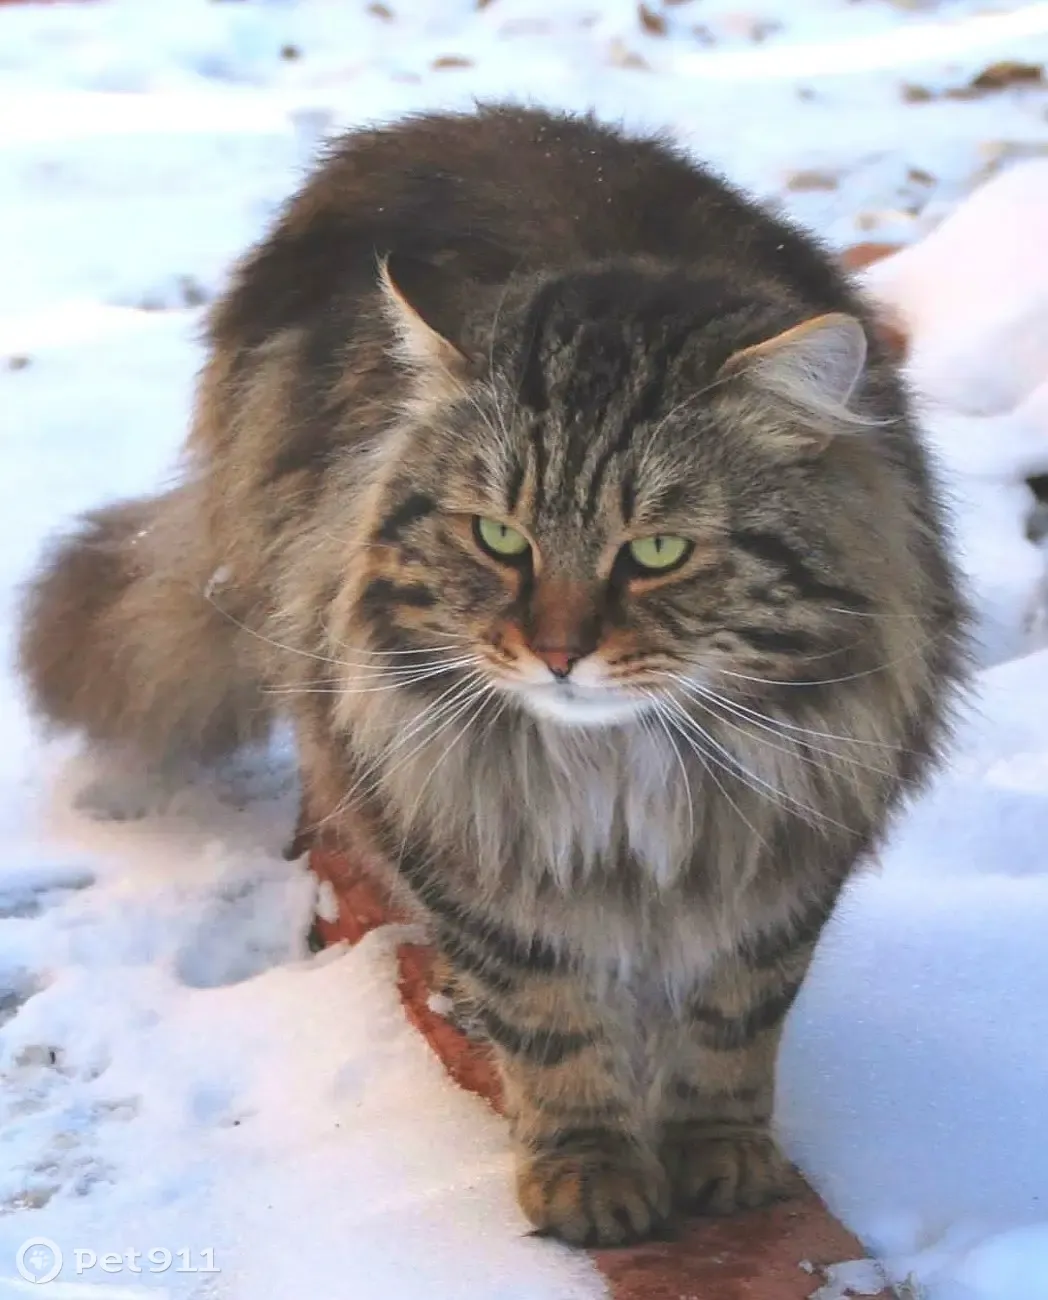 Пропала кошка: сибирский кот, 5 лет, 13-й переулок, Лесной | Pet911.ru